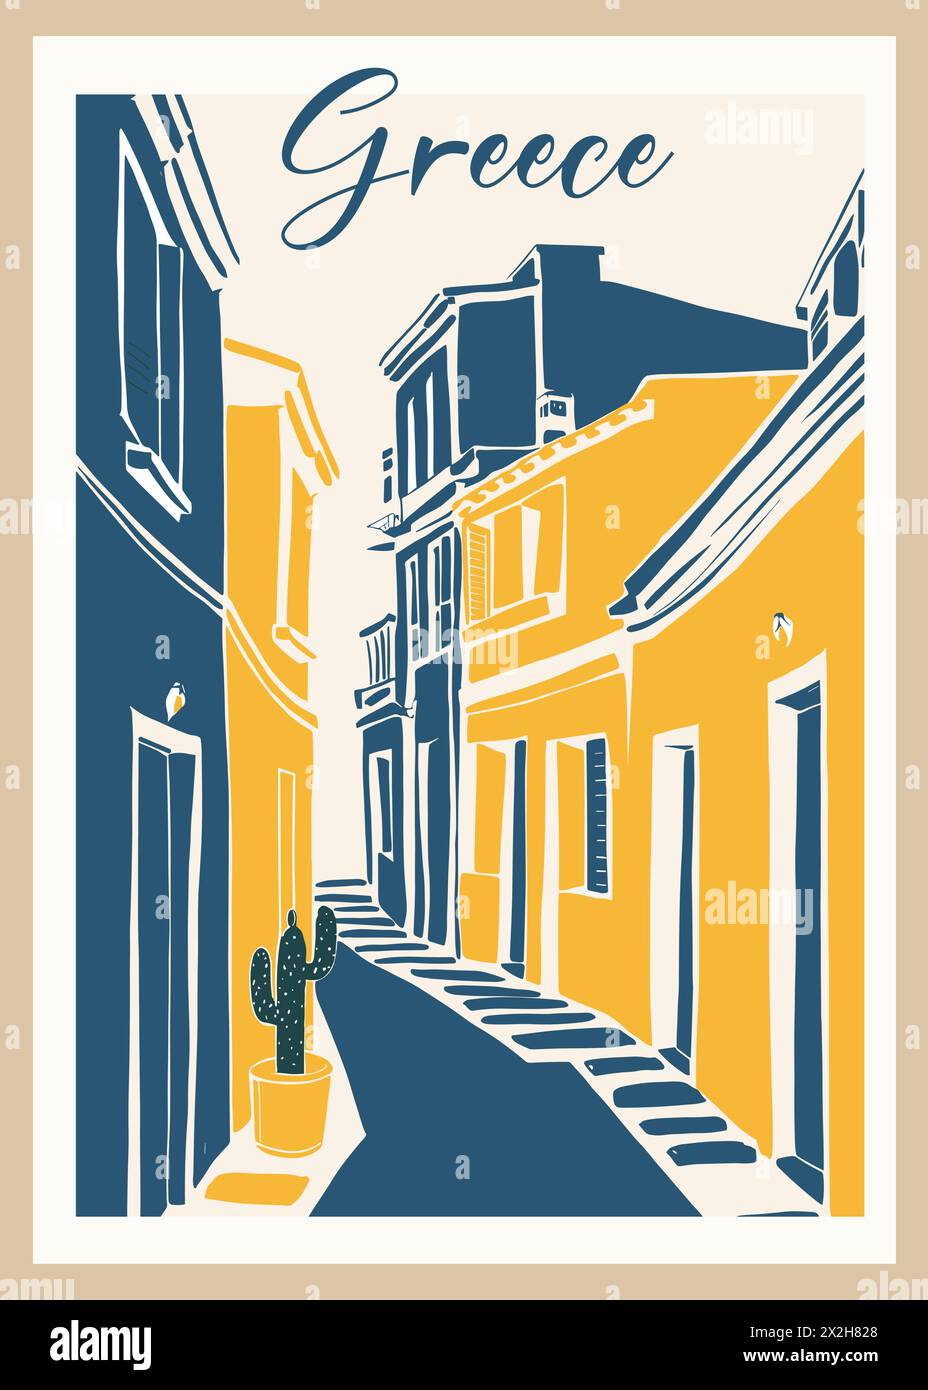 Griechenland Reiseziel Poster im Retro-Stil. Stadtbild mit alten Straßen und Gebäuden Vintage gelbe und blaue Zeichnung im Lithografiestil. Europea Stock Vektor